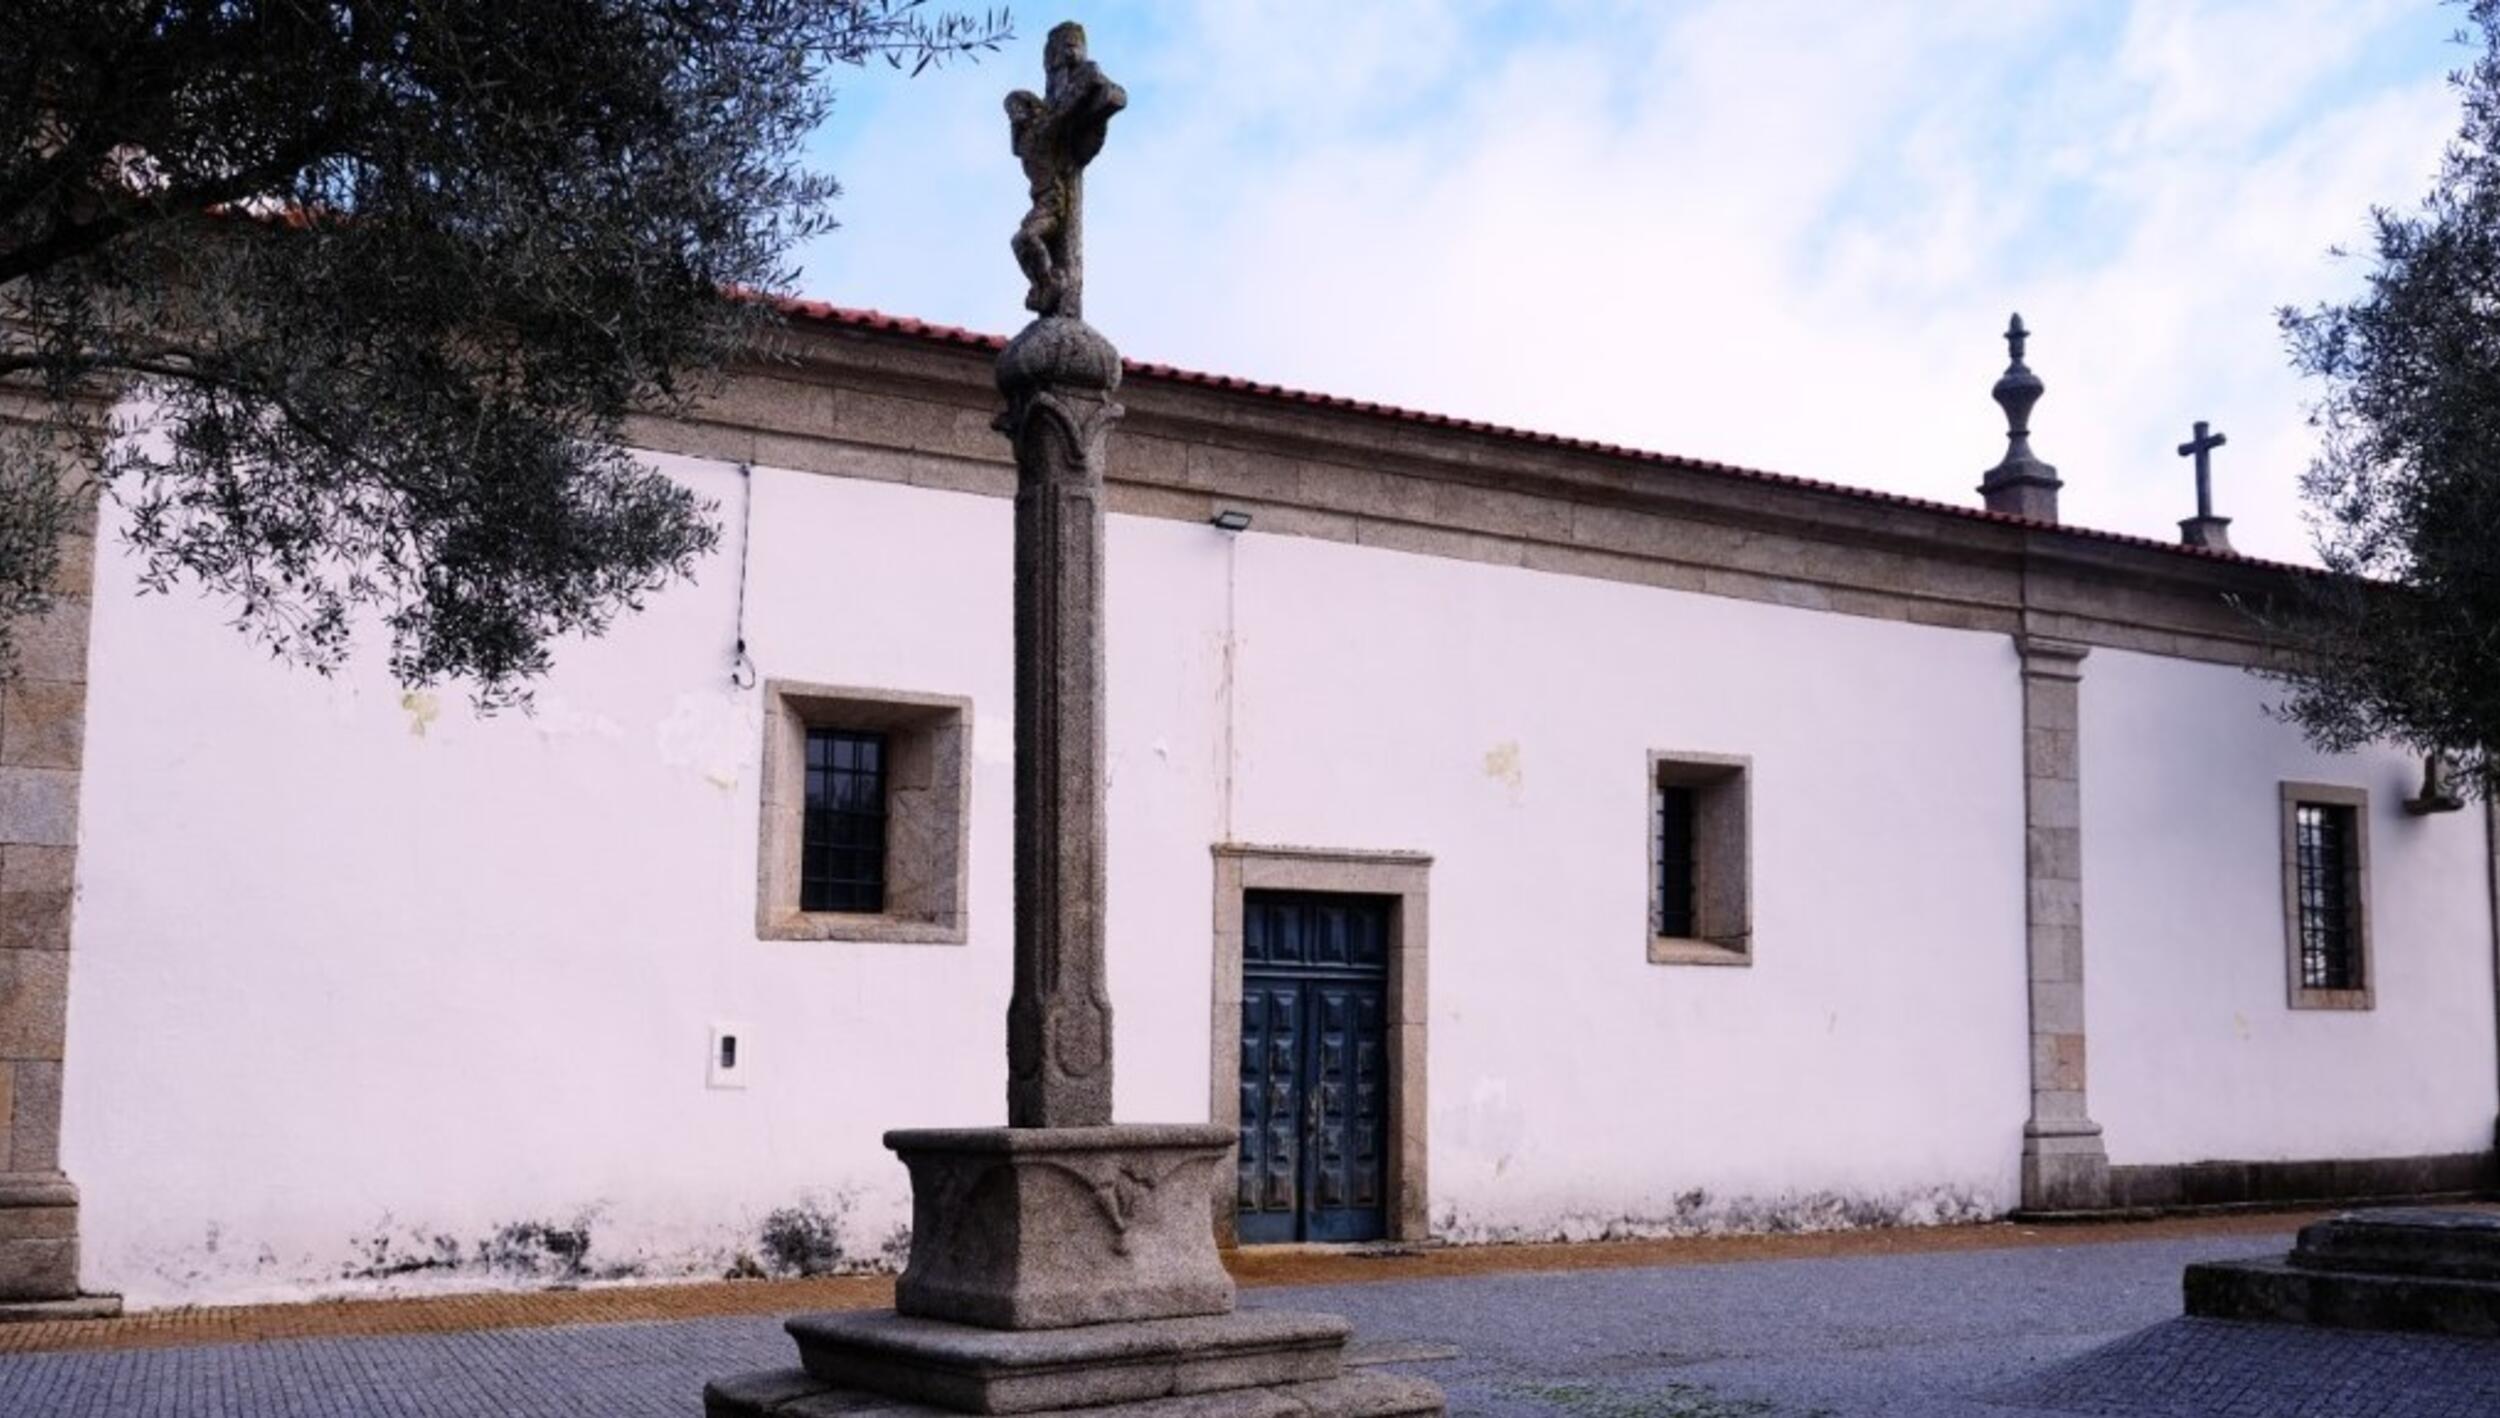 Alçado lateral e Cruzeiro no adro da igreja de Carragosa